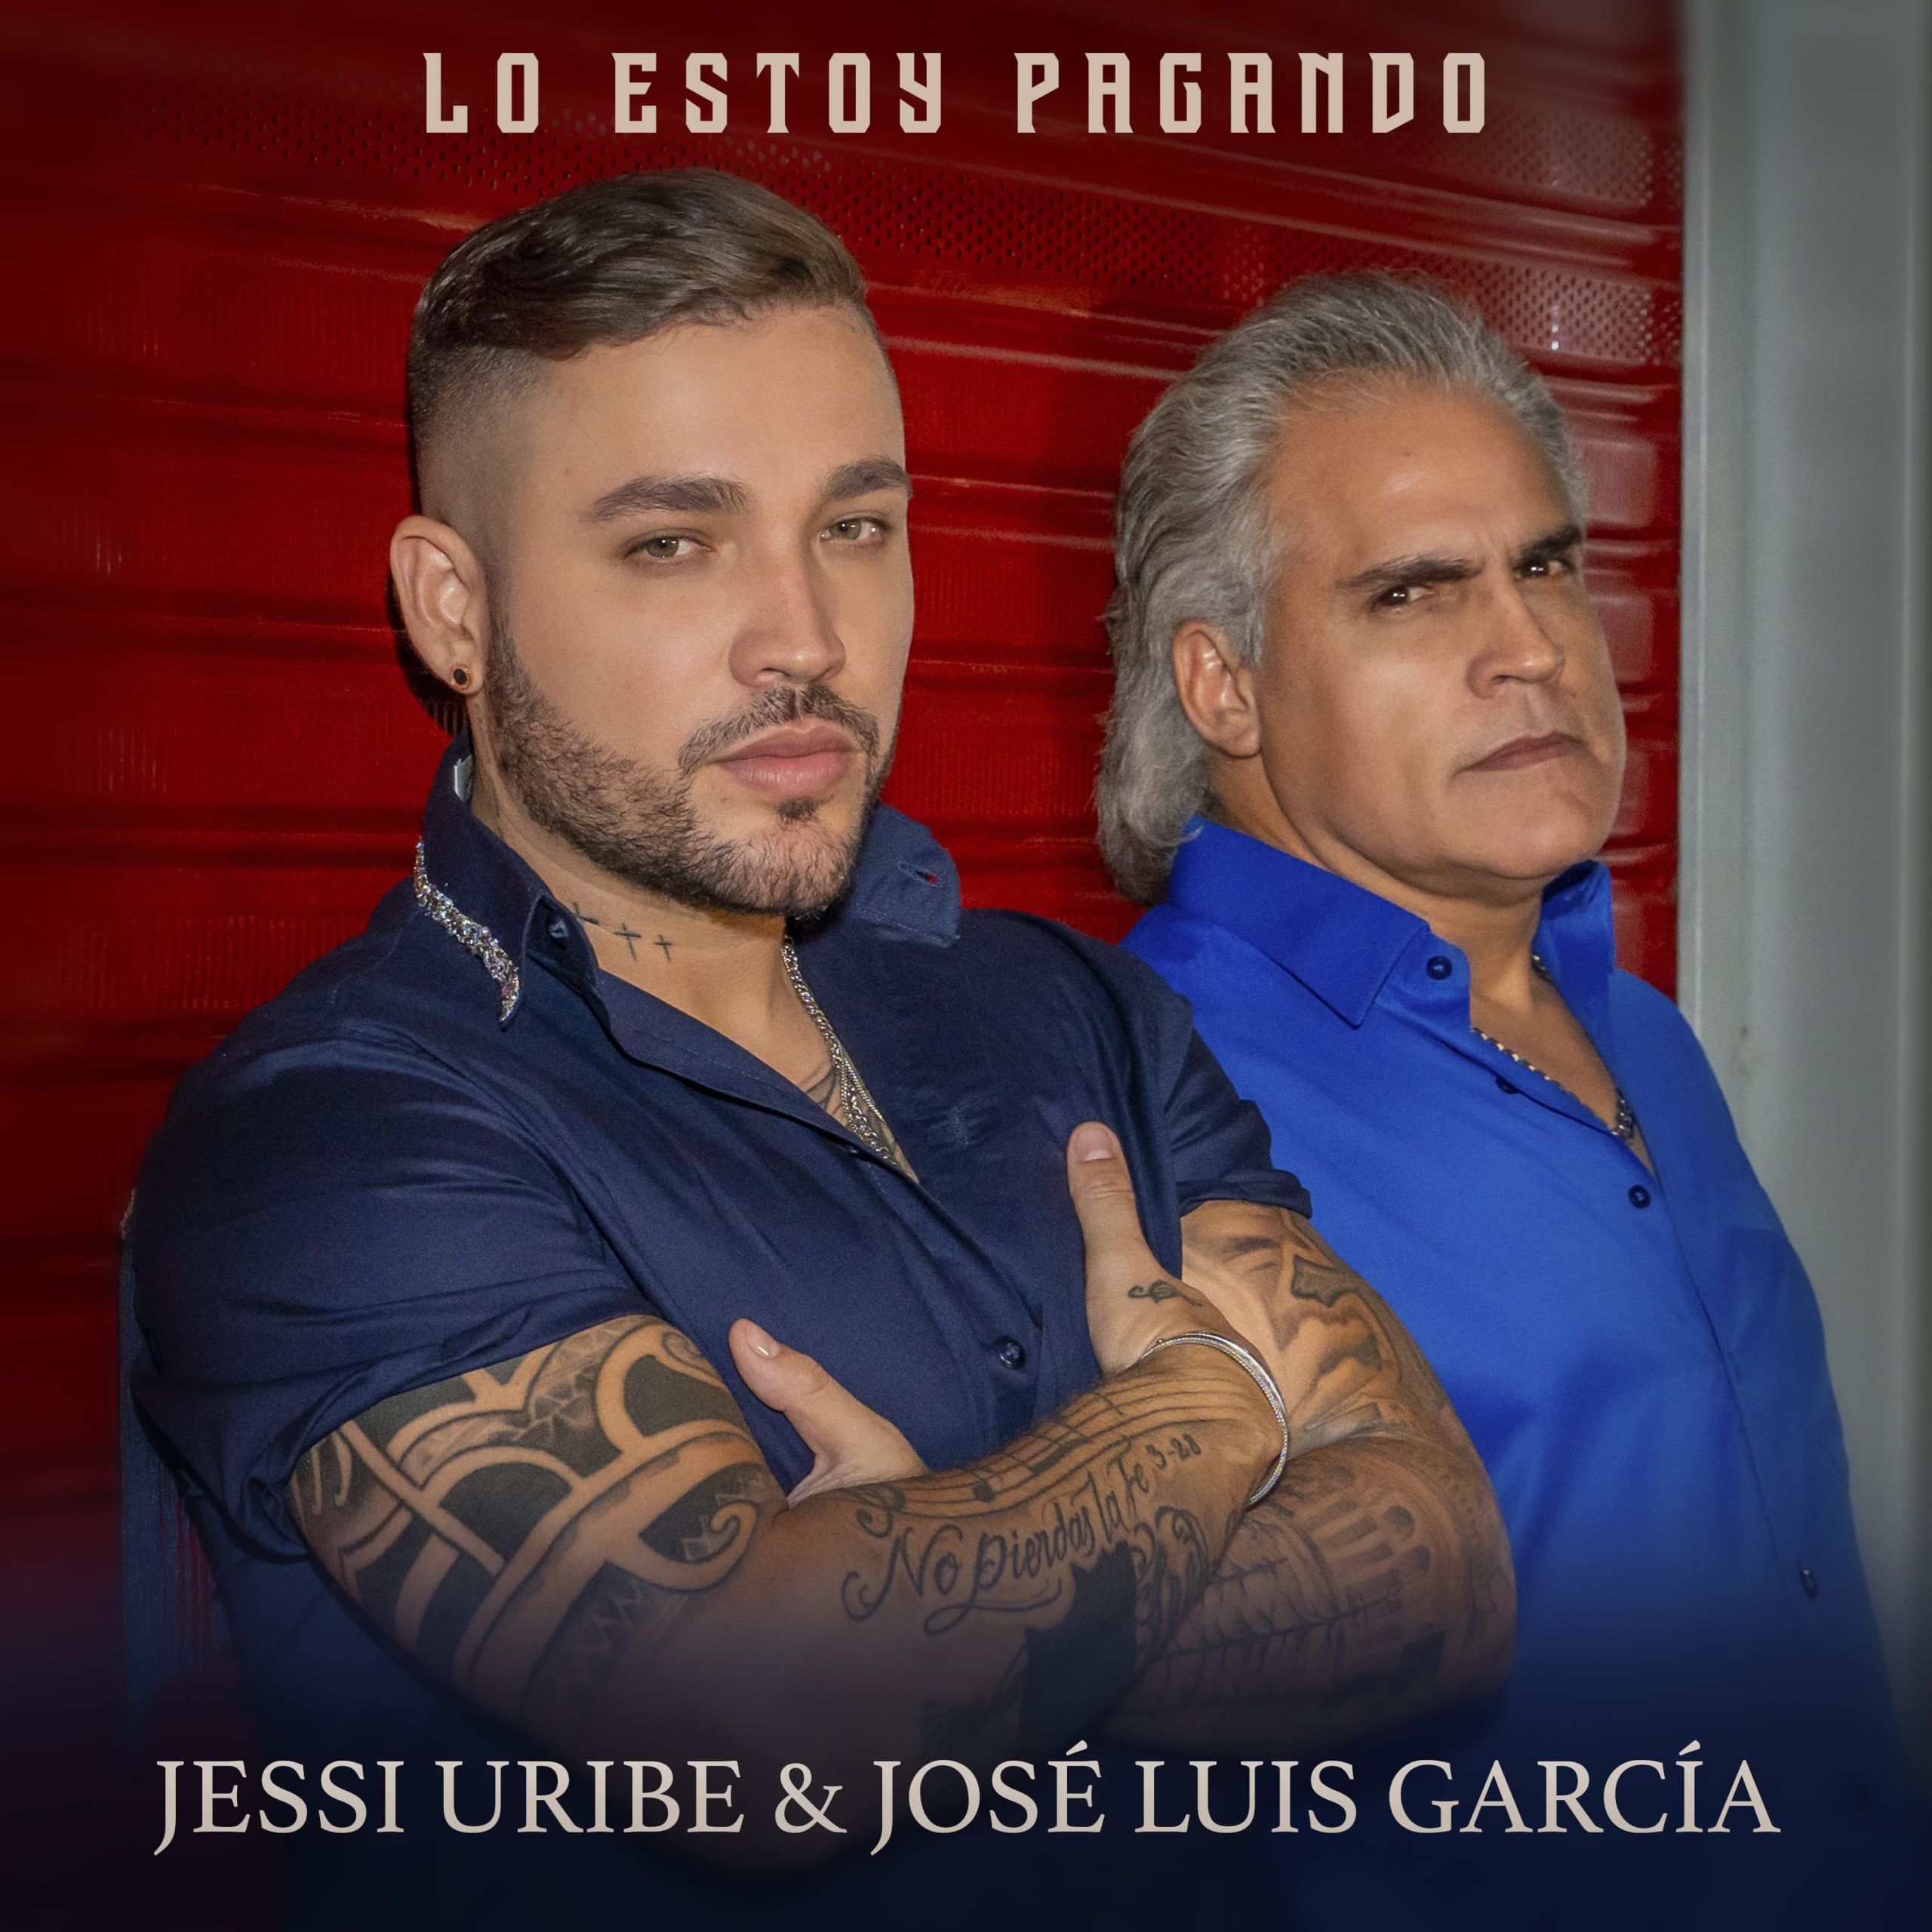 En este momento estás viendo “Lo Estoy Pagando”, el regalo de navidad de Jessi Uribe y José Luis García